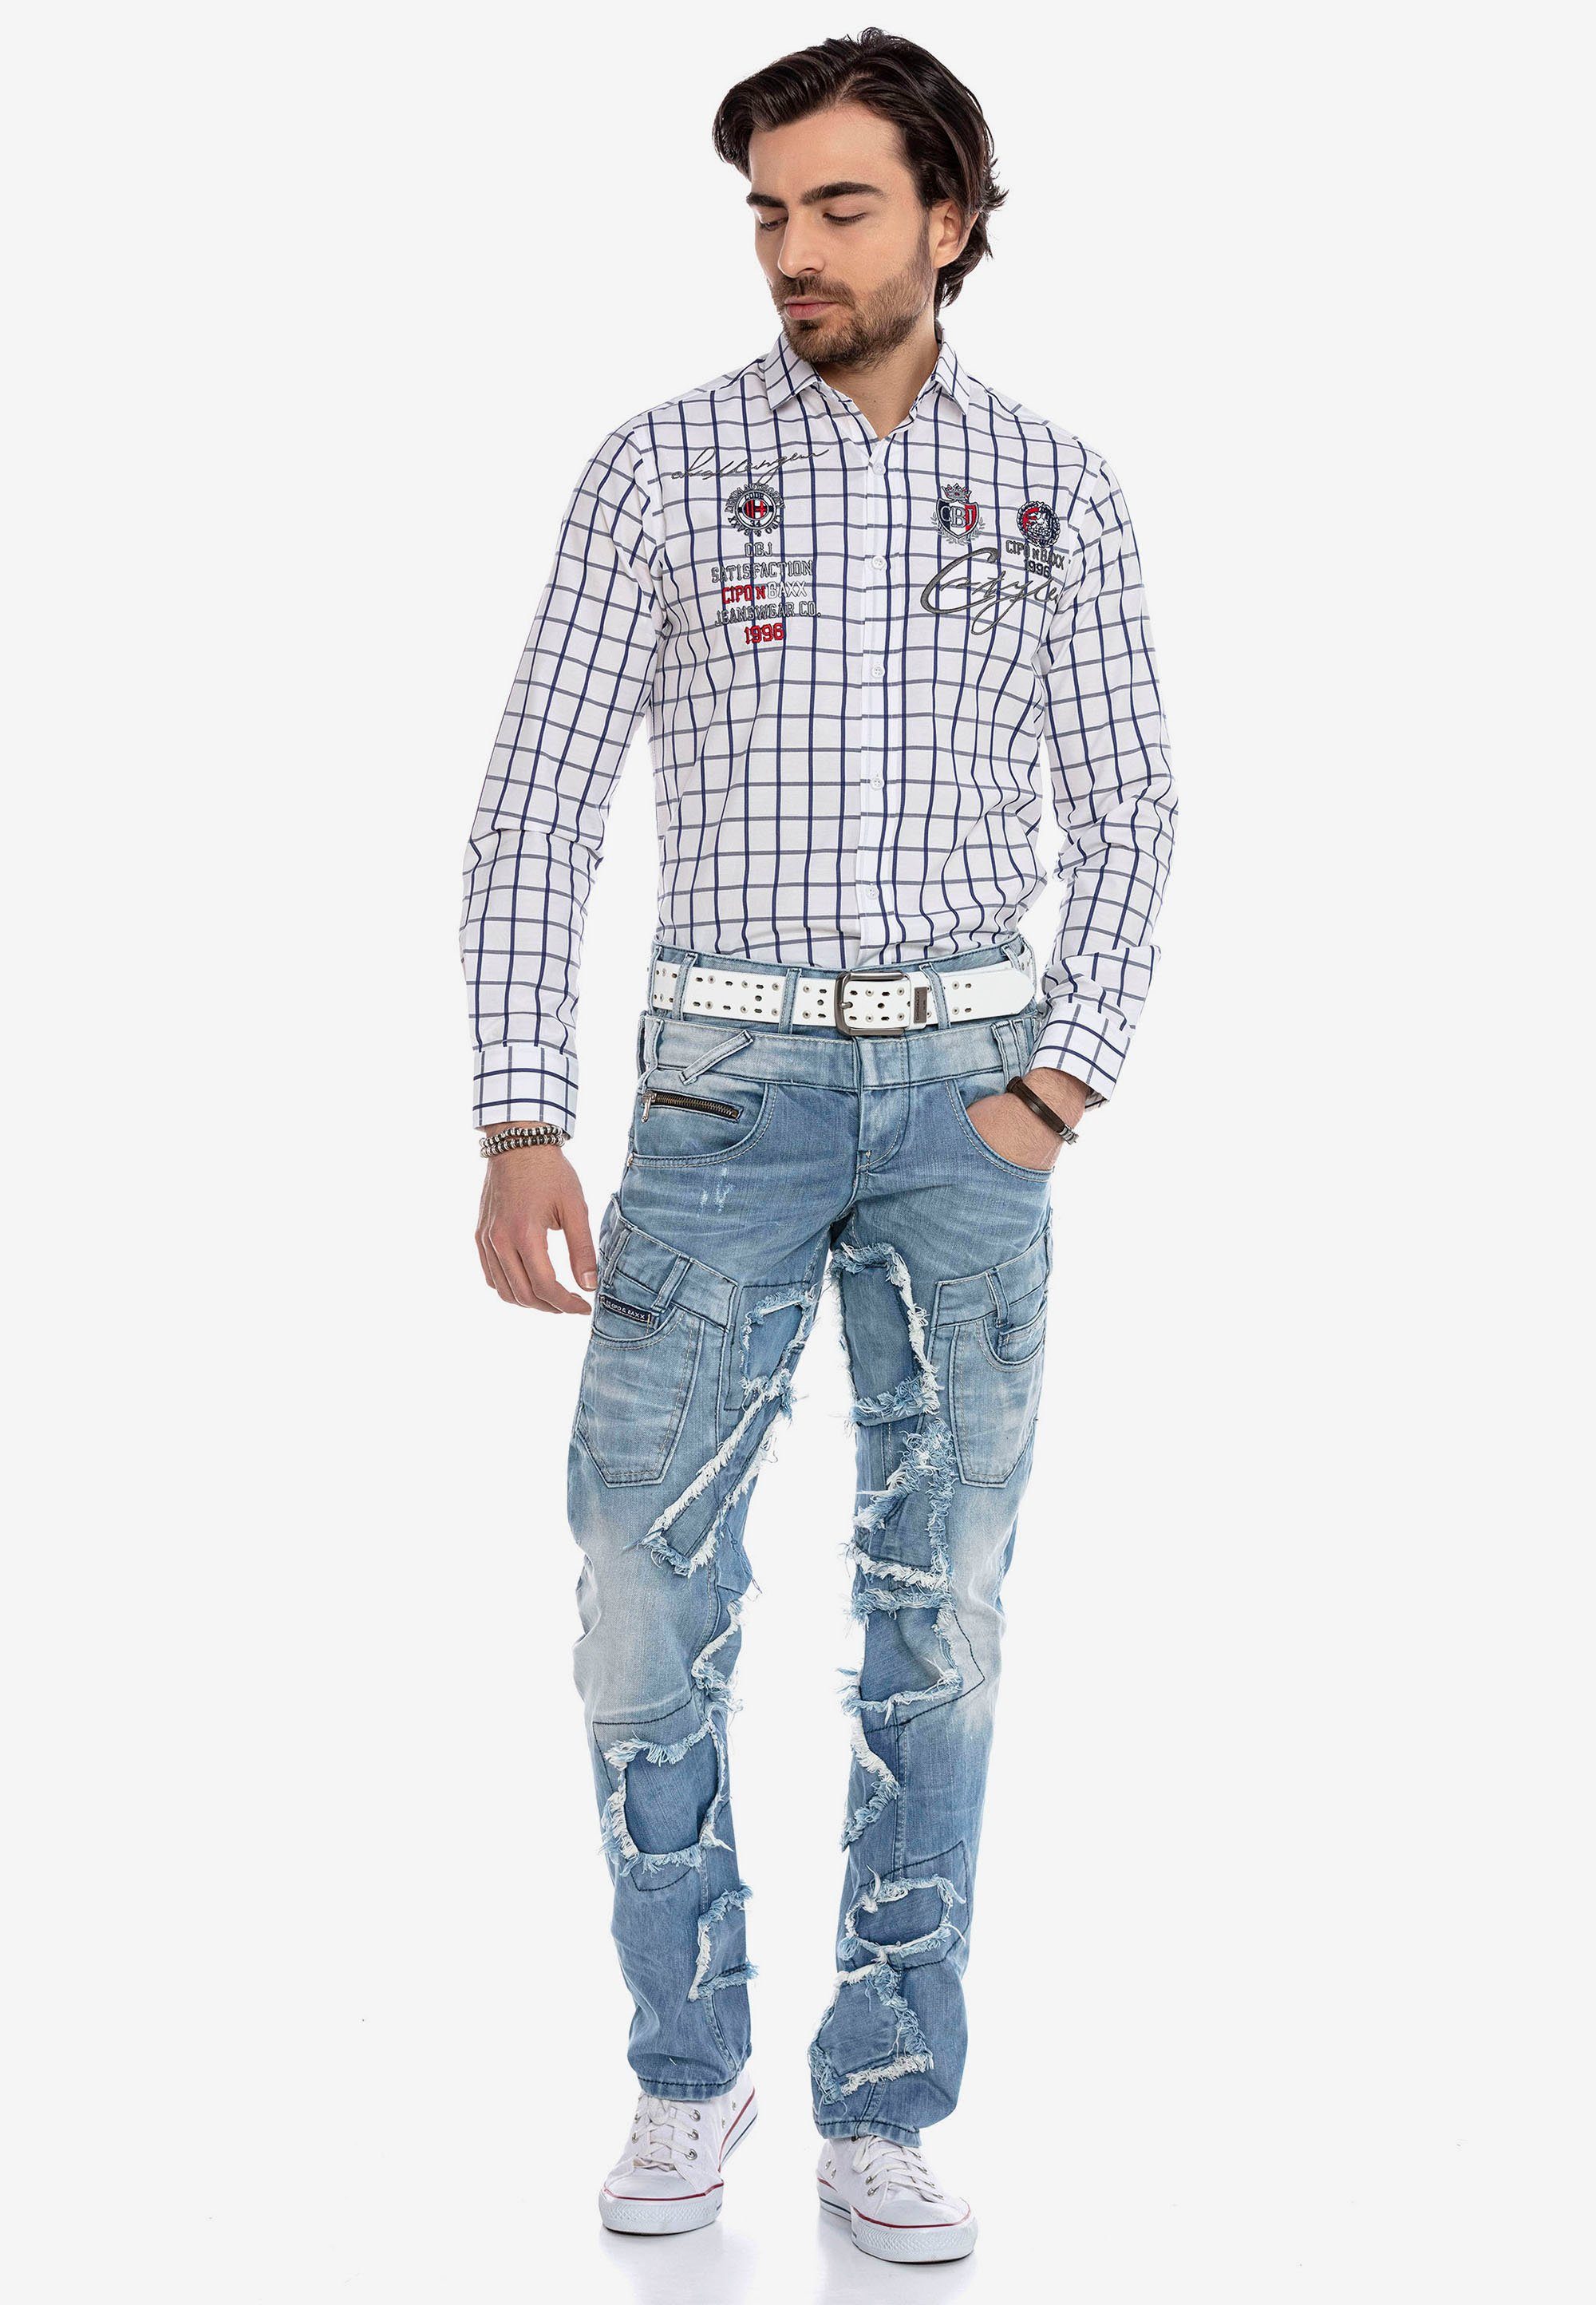 Cipo & Baxx Bequeme Patchwork-Design trendigen im Jeans